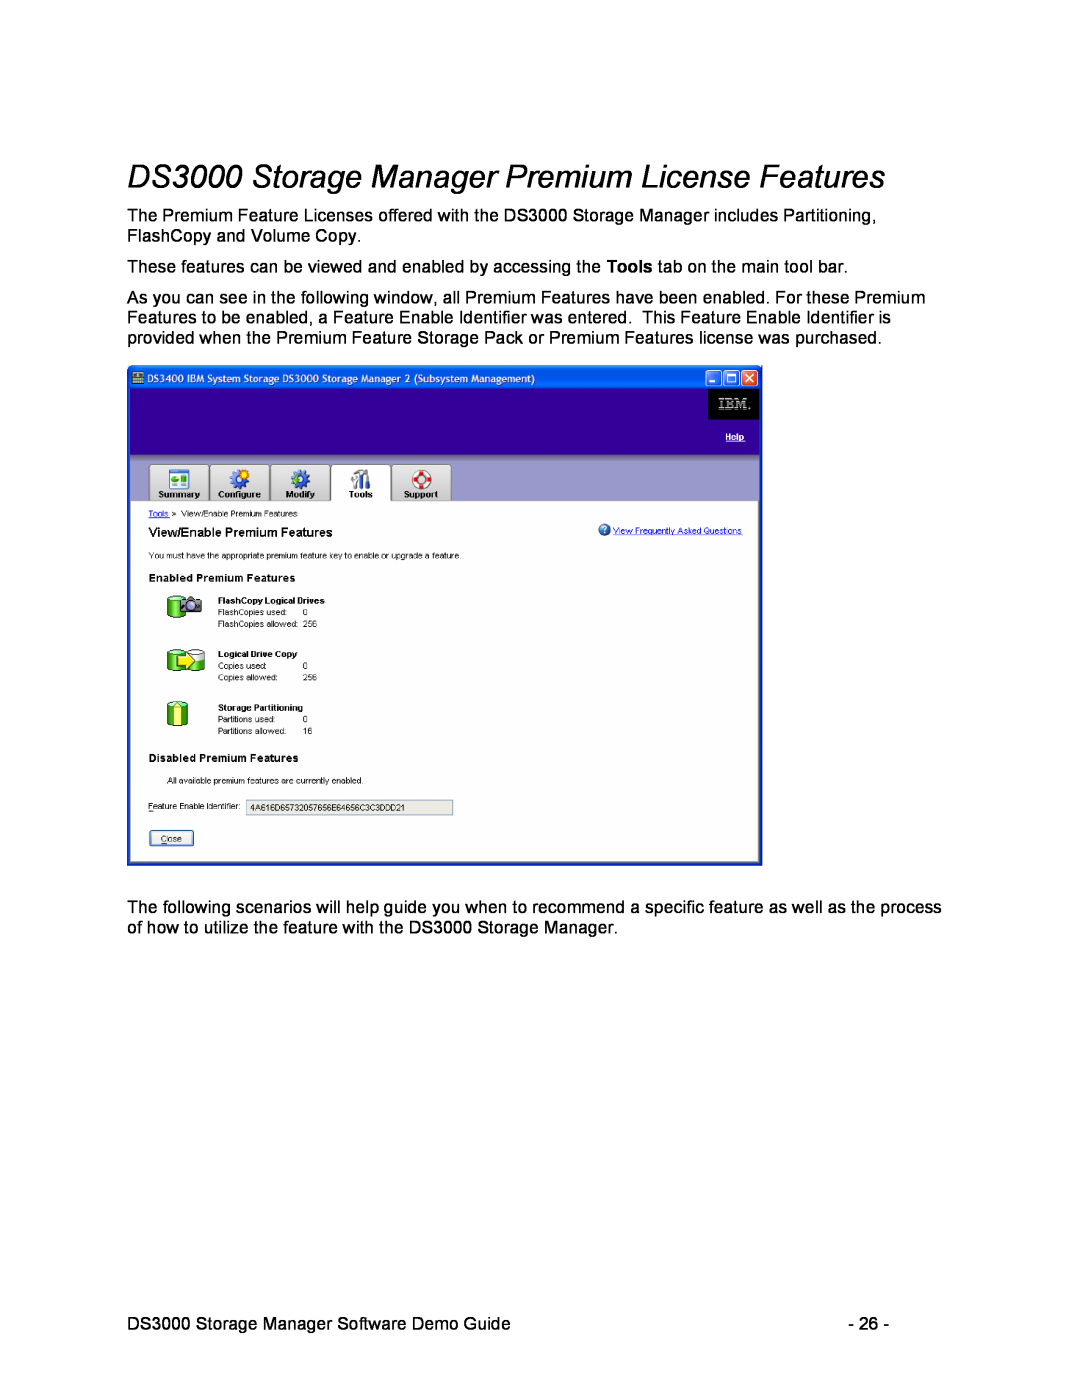 IBM manual DS3000 Storage Manager Premium License Features 